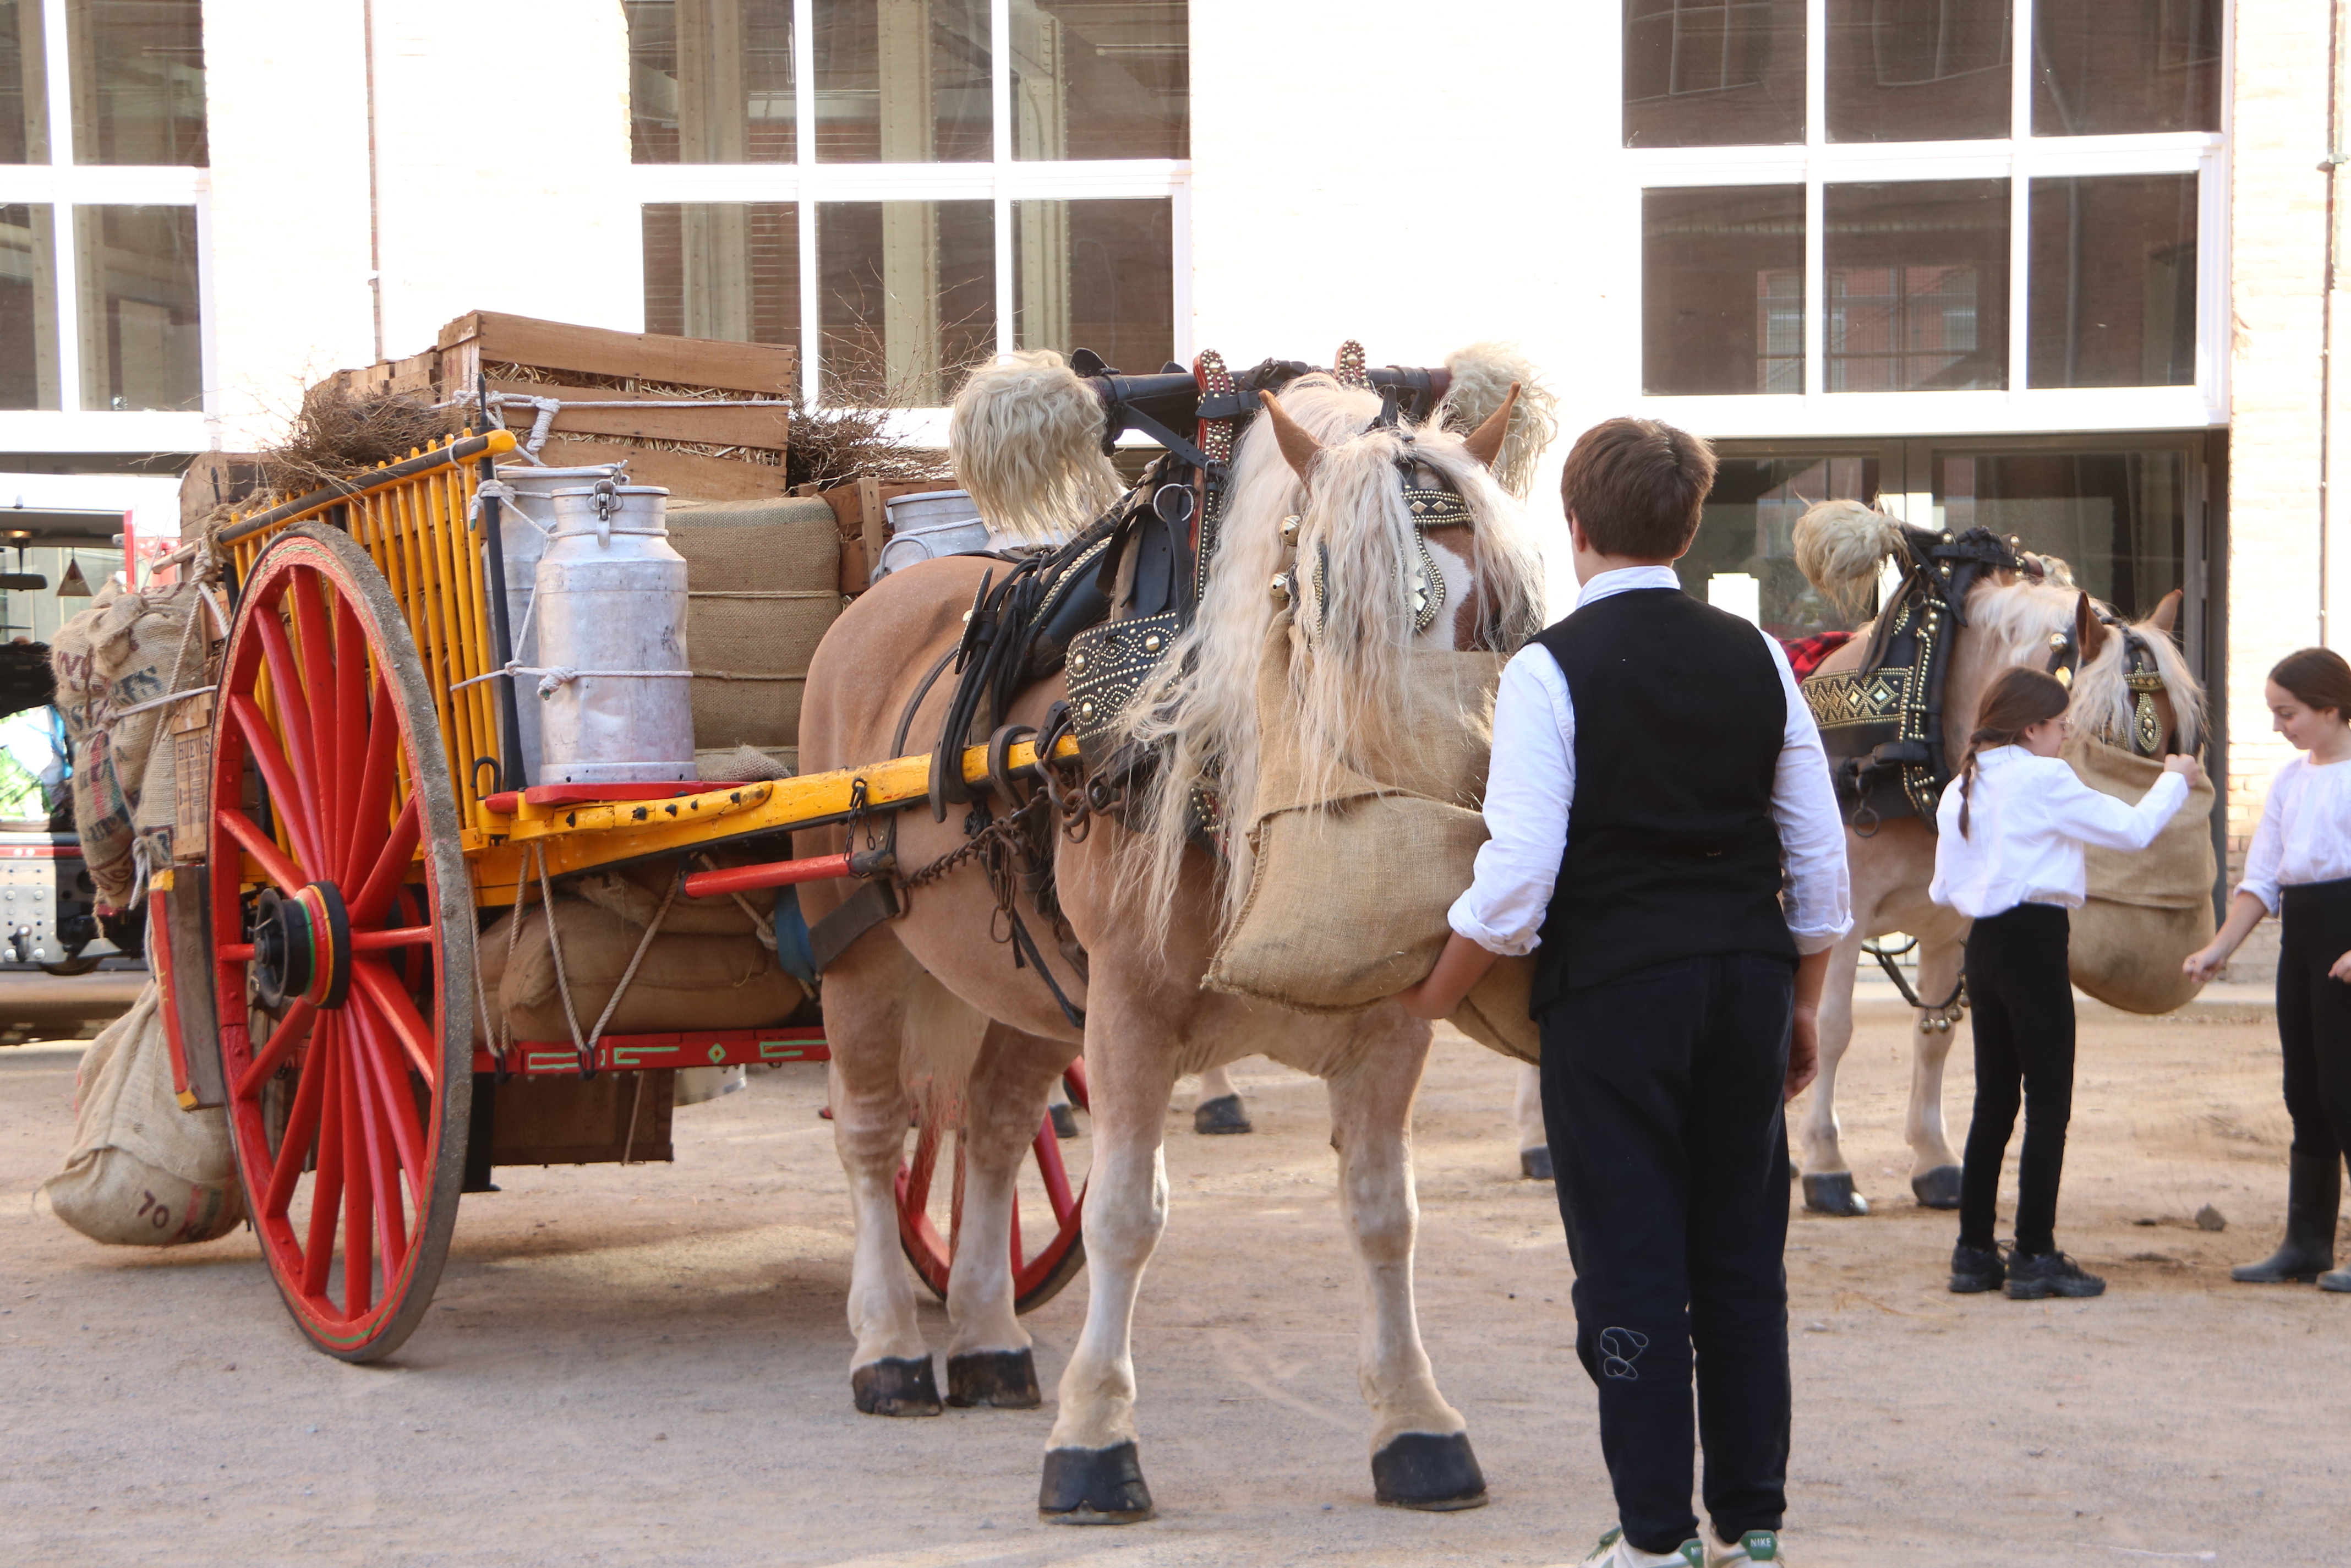 Dos cavalls amb els seus carruatges durant la preparació dels animals abans de sortir a fer els Tres Tombs de Sant Andreu